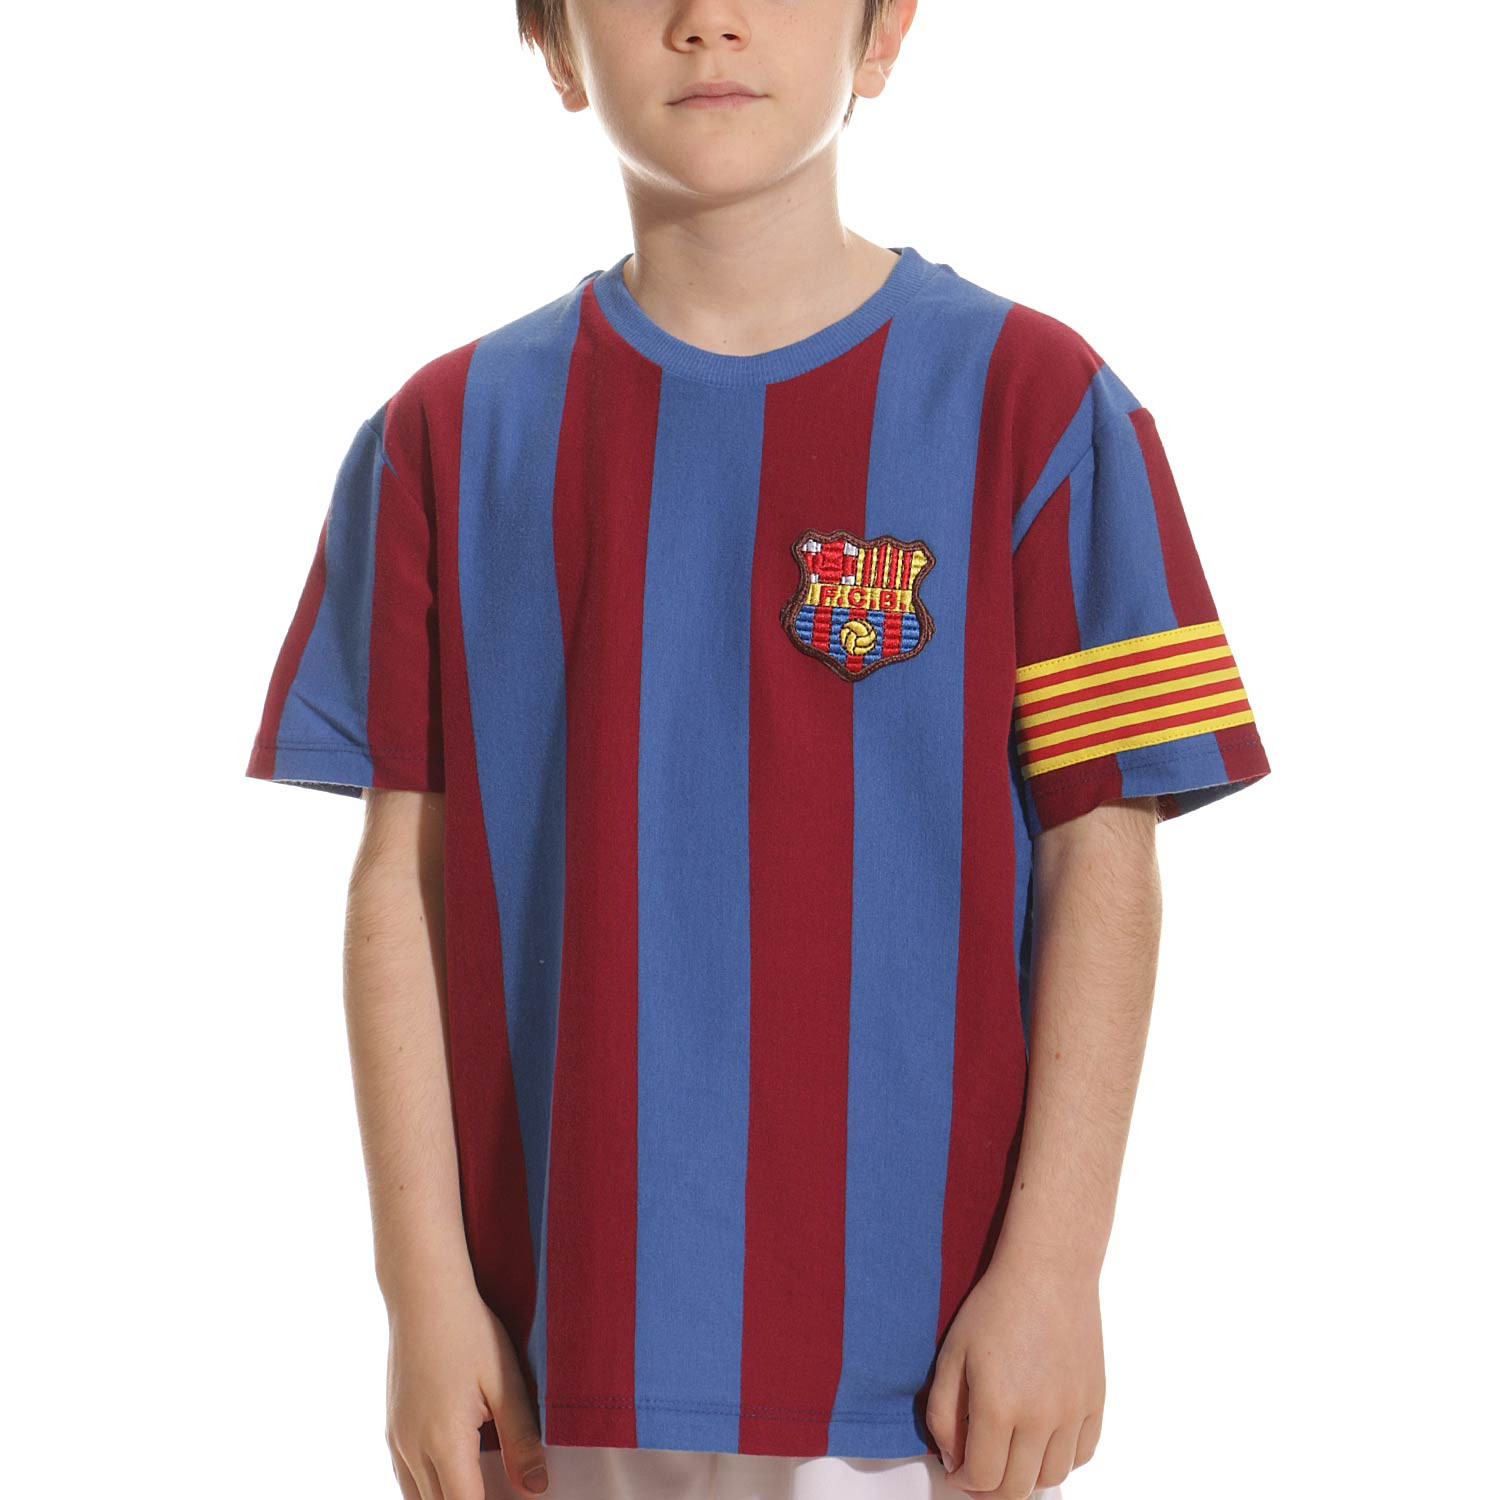 camiseta barcelona niño - Compra venta en todocoleccion